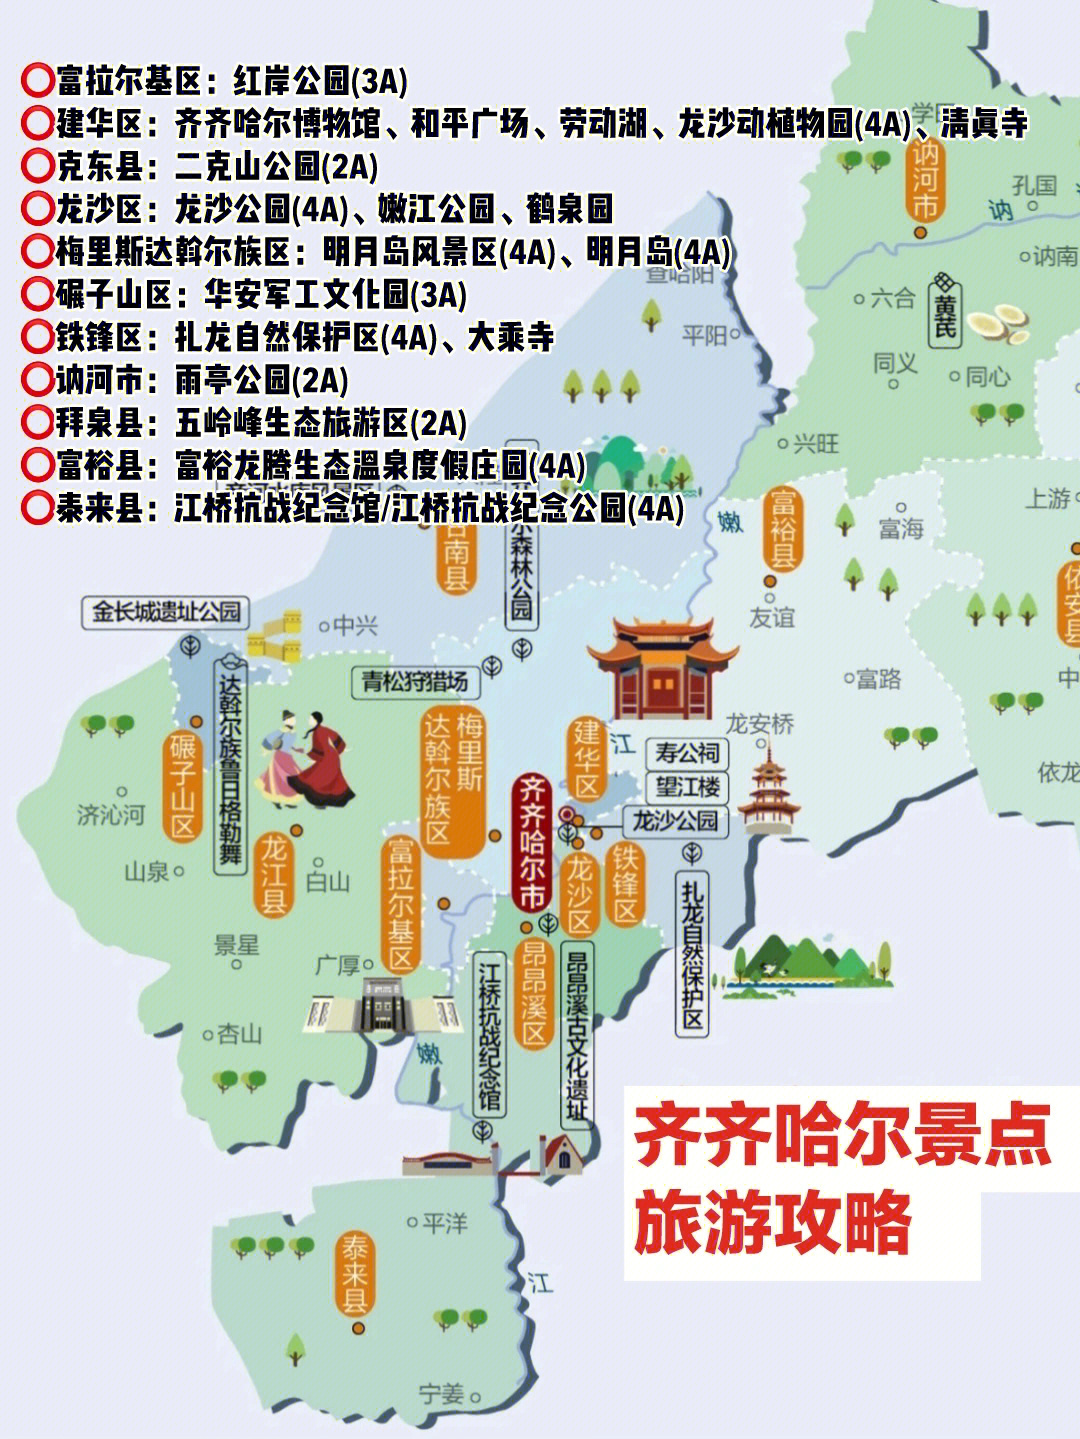 黑龙江依安县地图图片